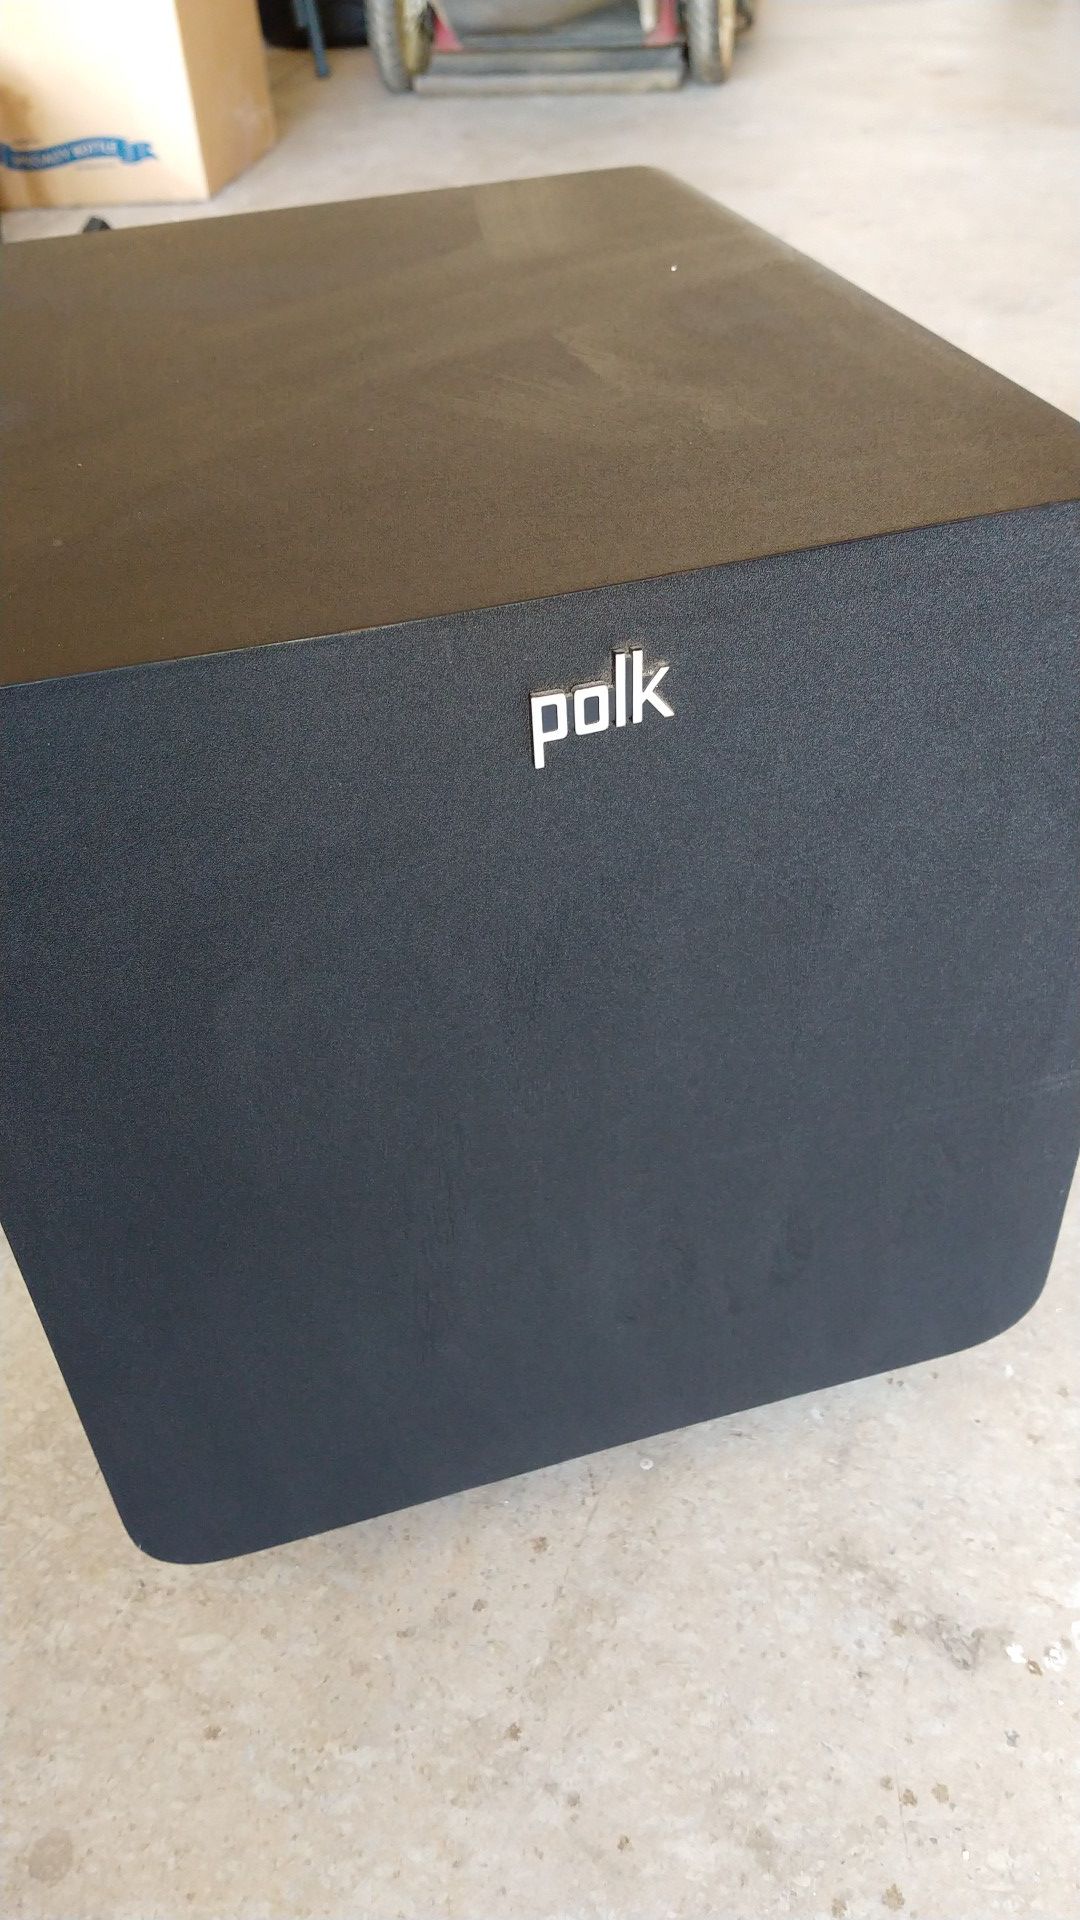 Polk Audio wireless sub